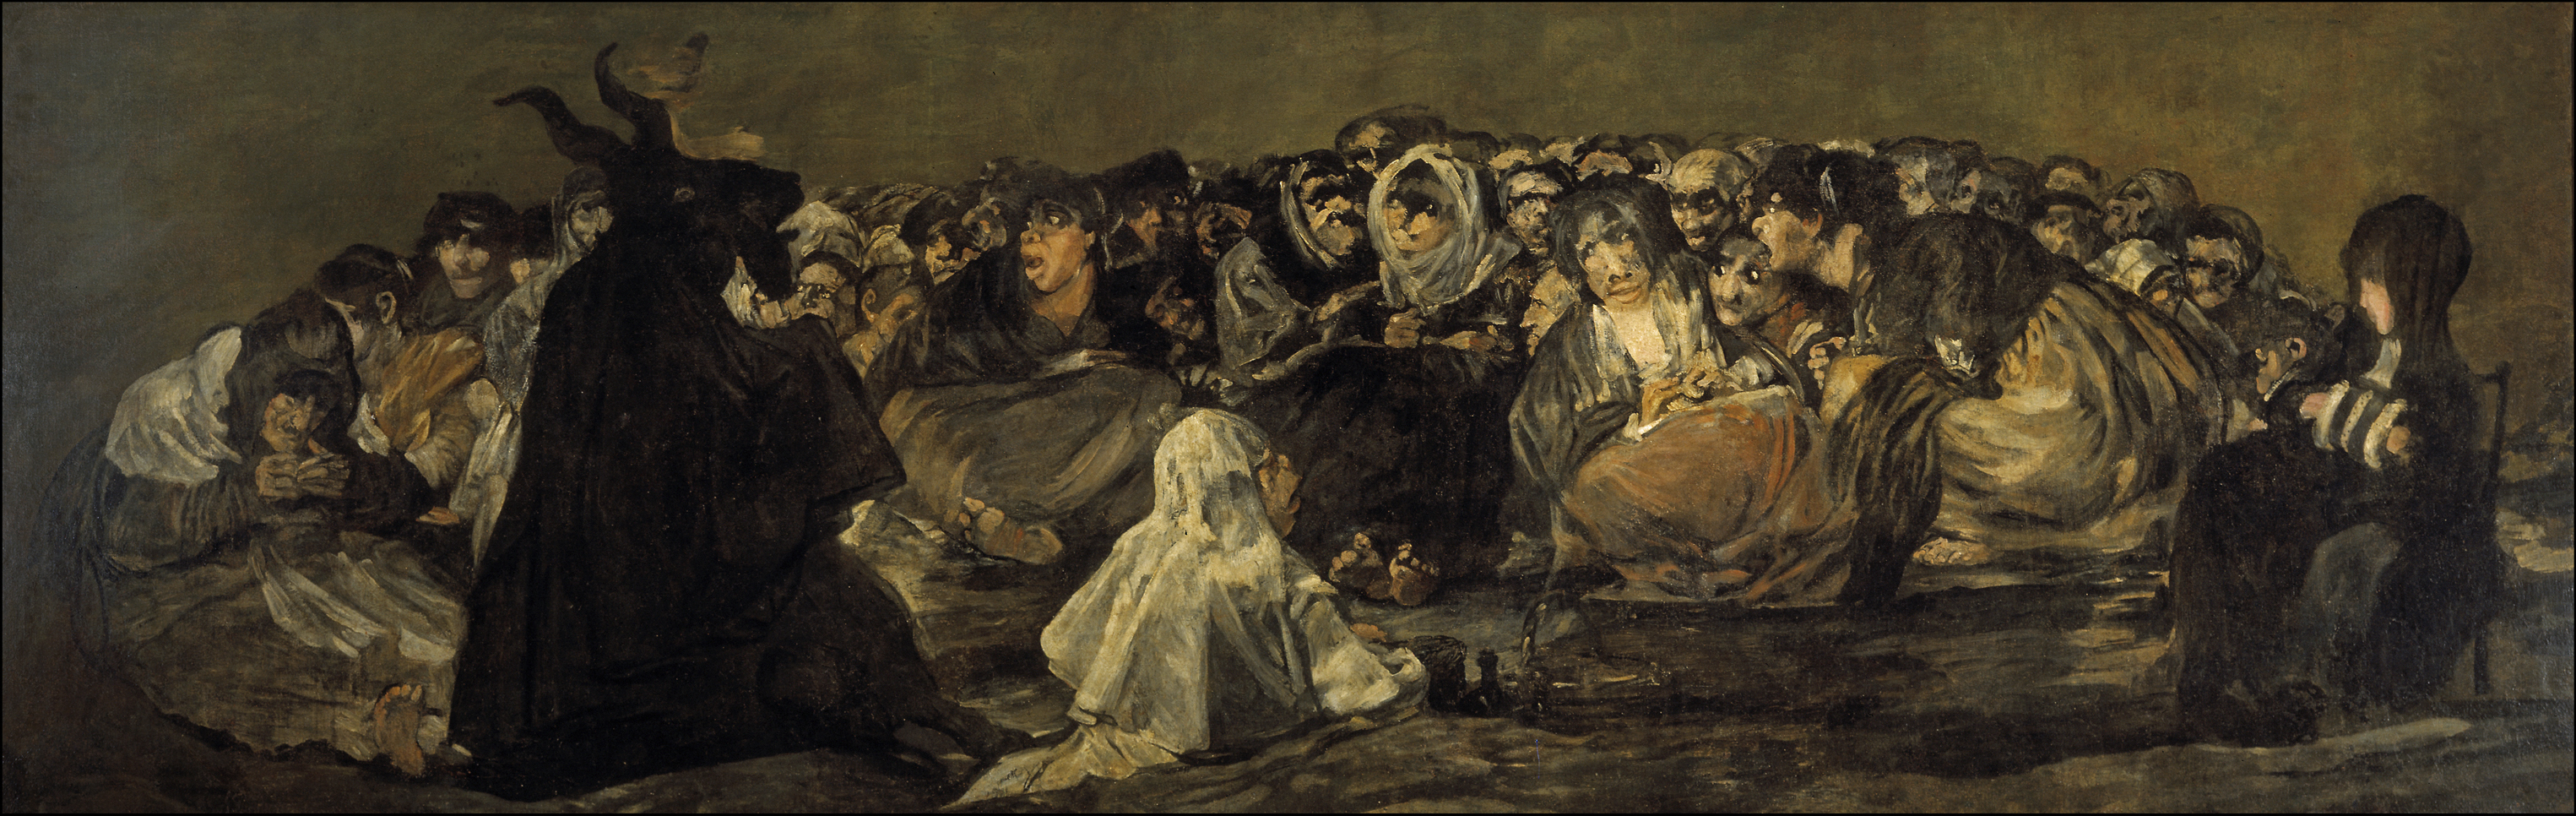 Witches' Sabbath by Francisco Goya - 1821-1823 - 140.5 x 435.7 cm Museo del Prado